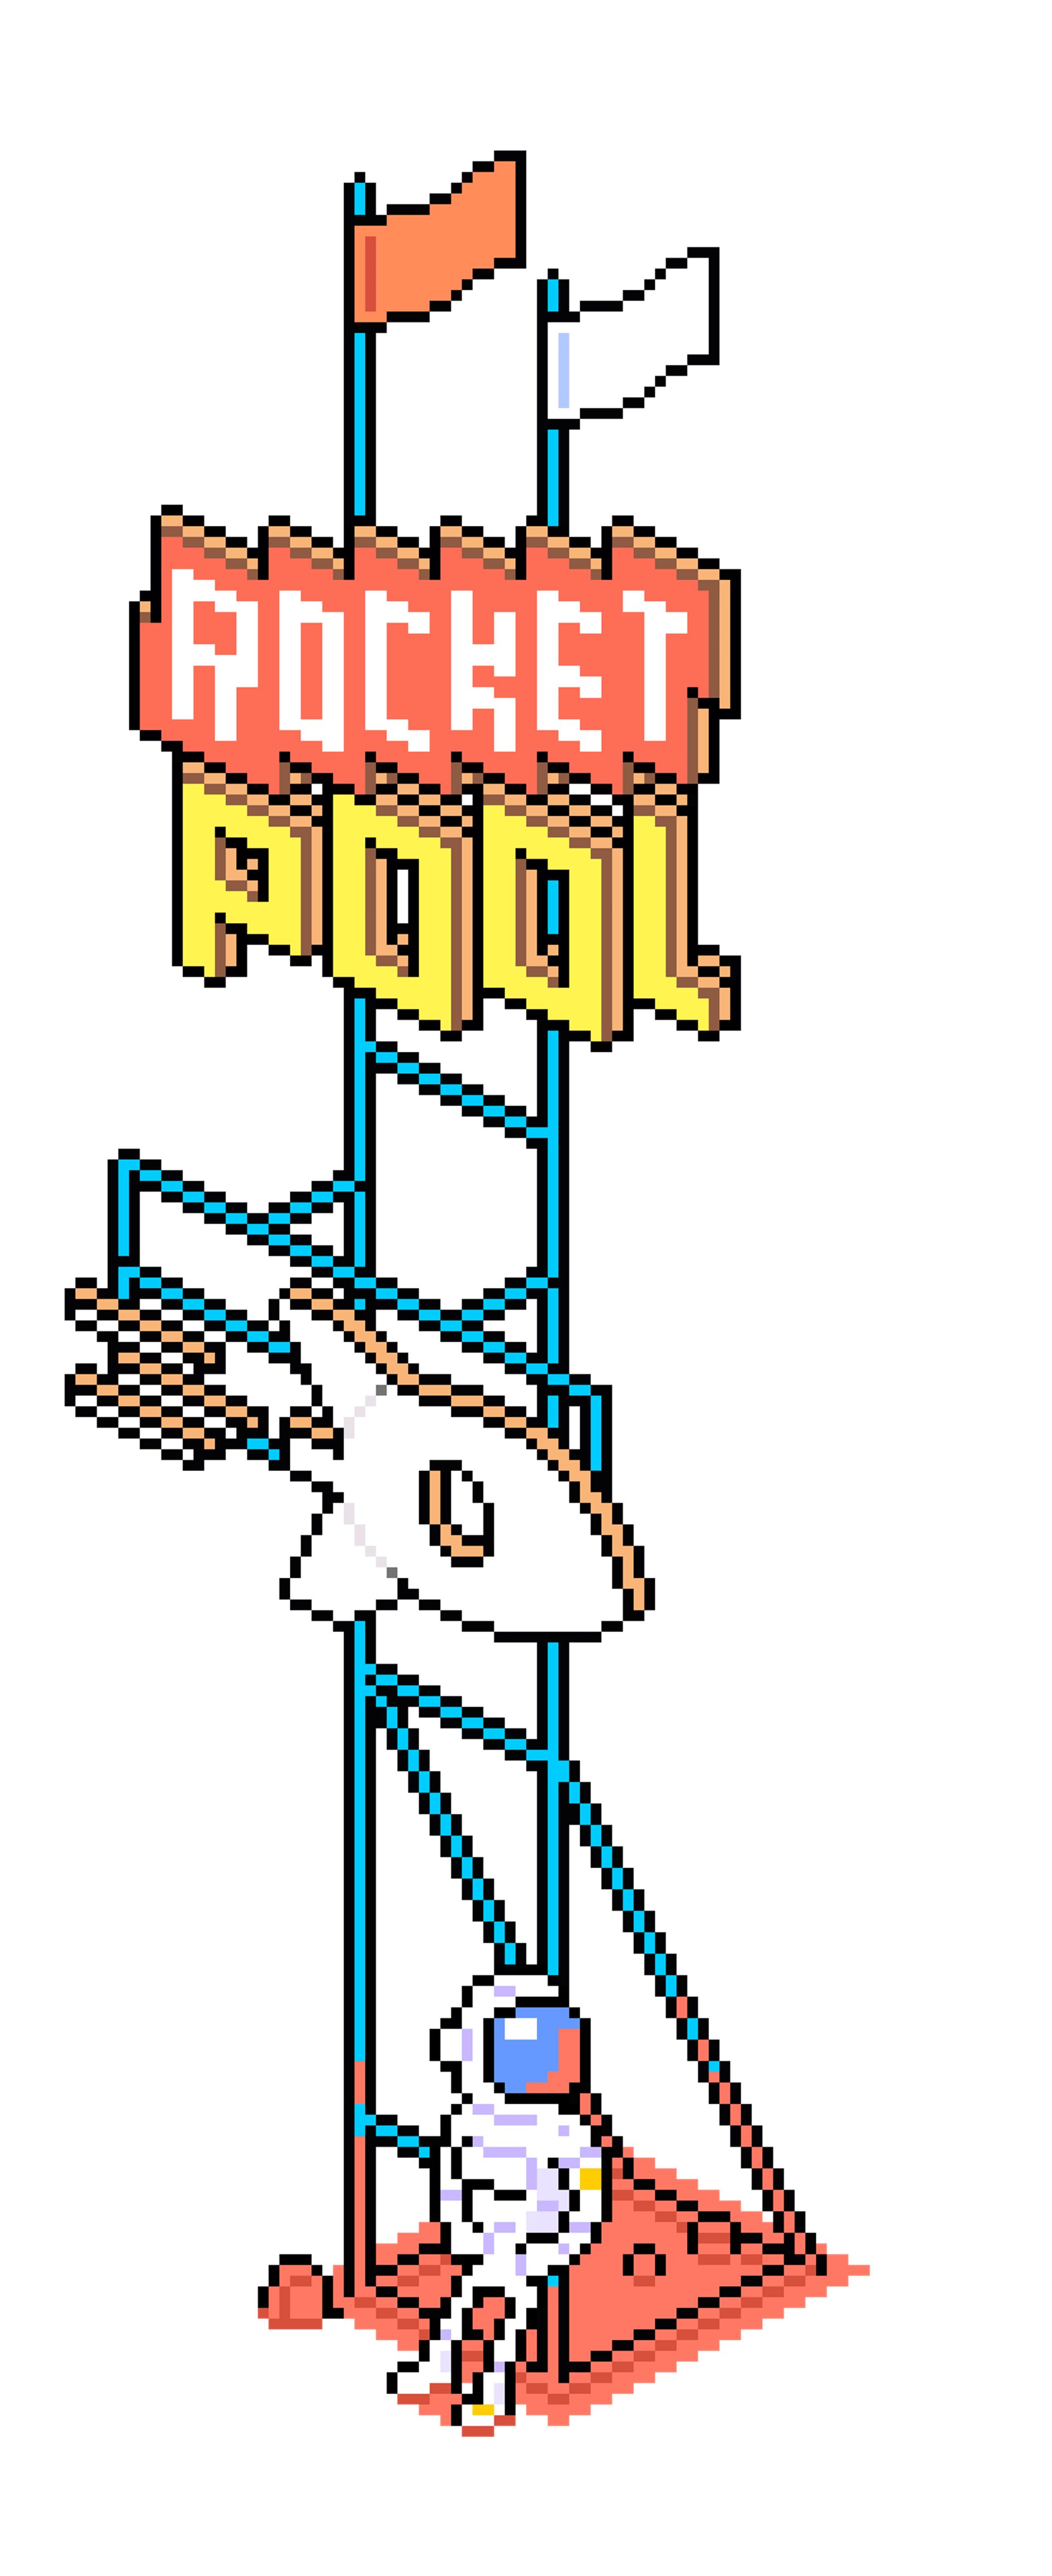 Rocket-Pool-Billboard-Object